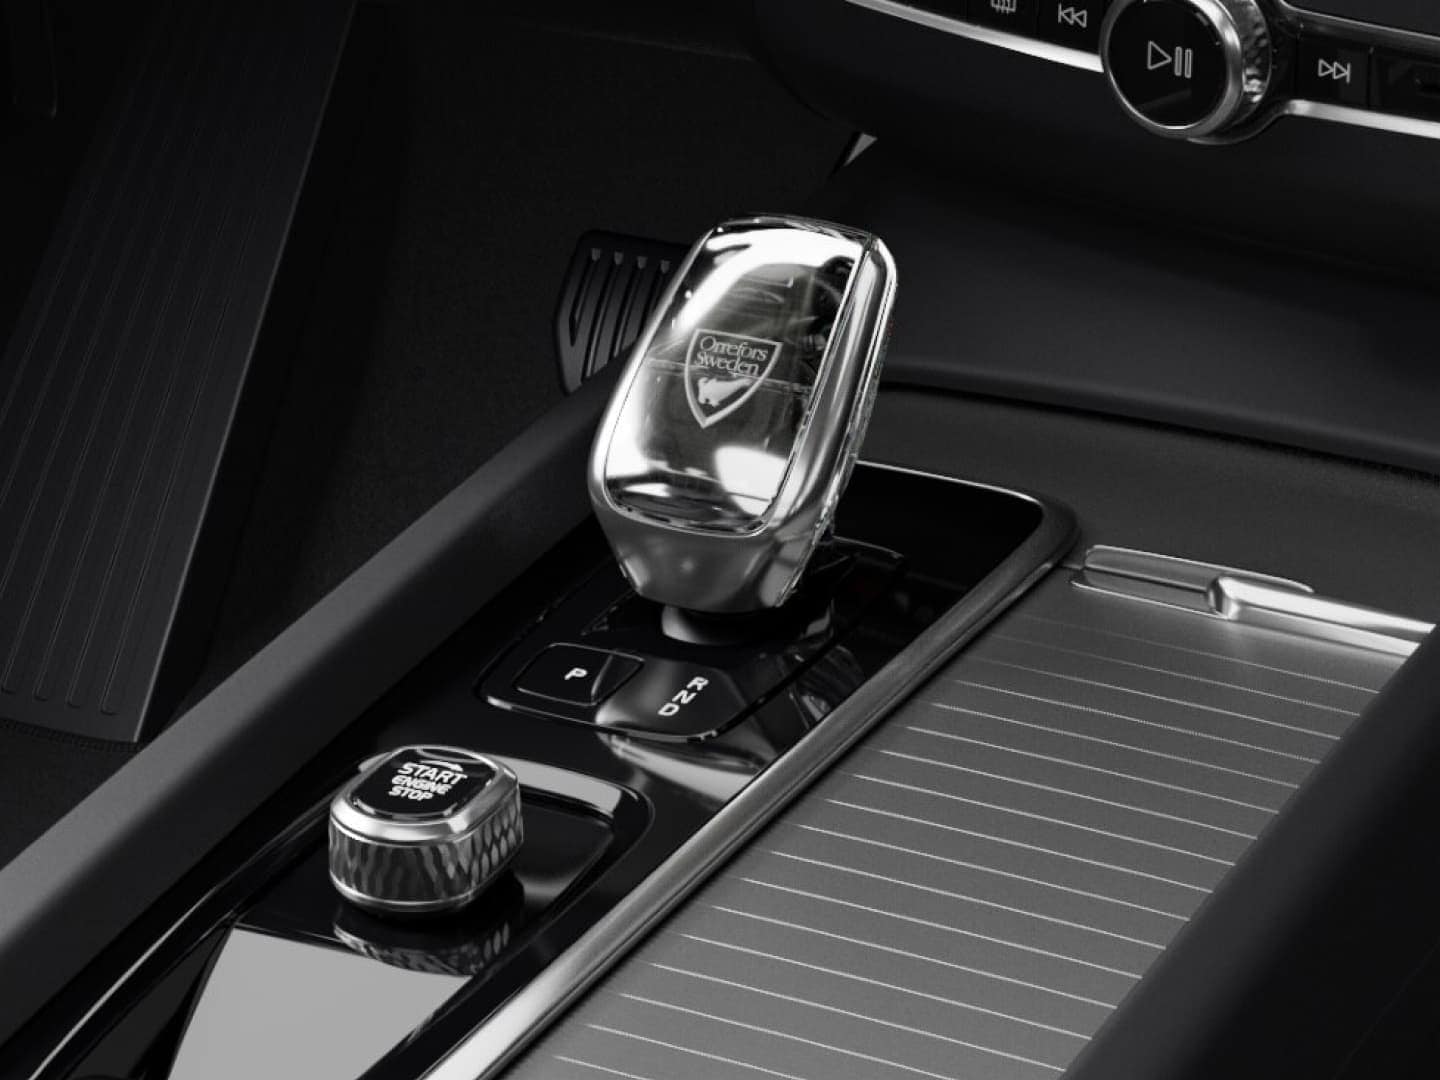 Levier de vitesse en cristal d’Orrefors et volant sur mesure du SUV hybride Volvo XC60 Black Edition.